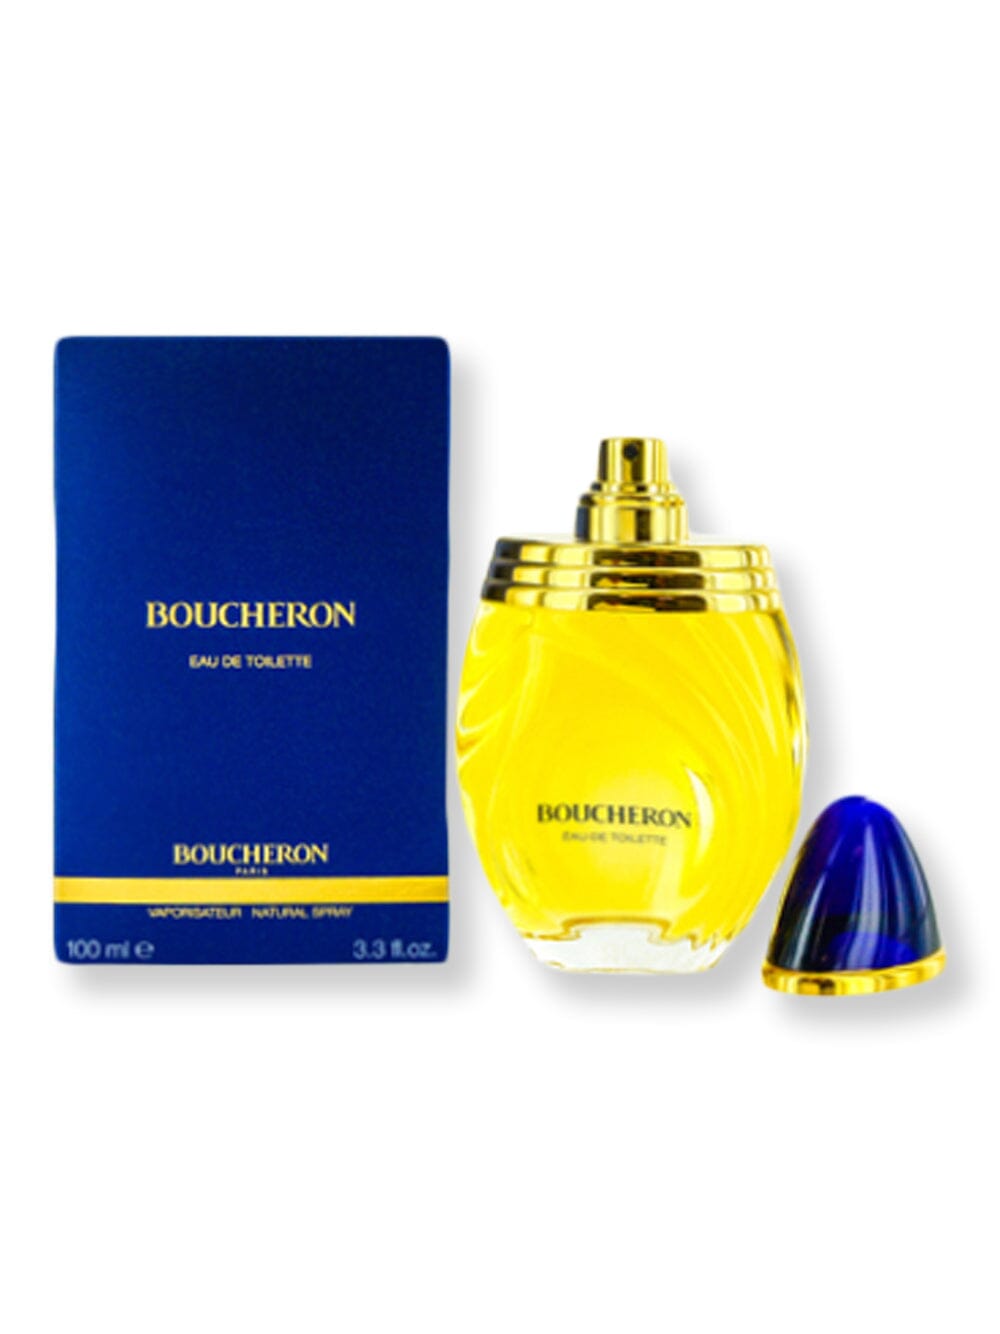 Boucheron Boucheron EDT Spray 3.3 oz Perfume 